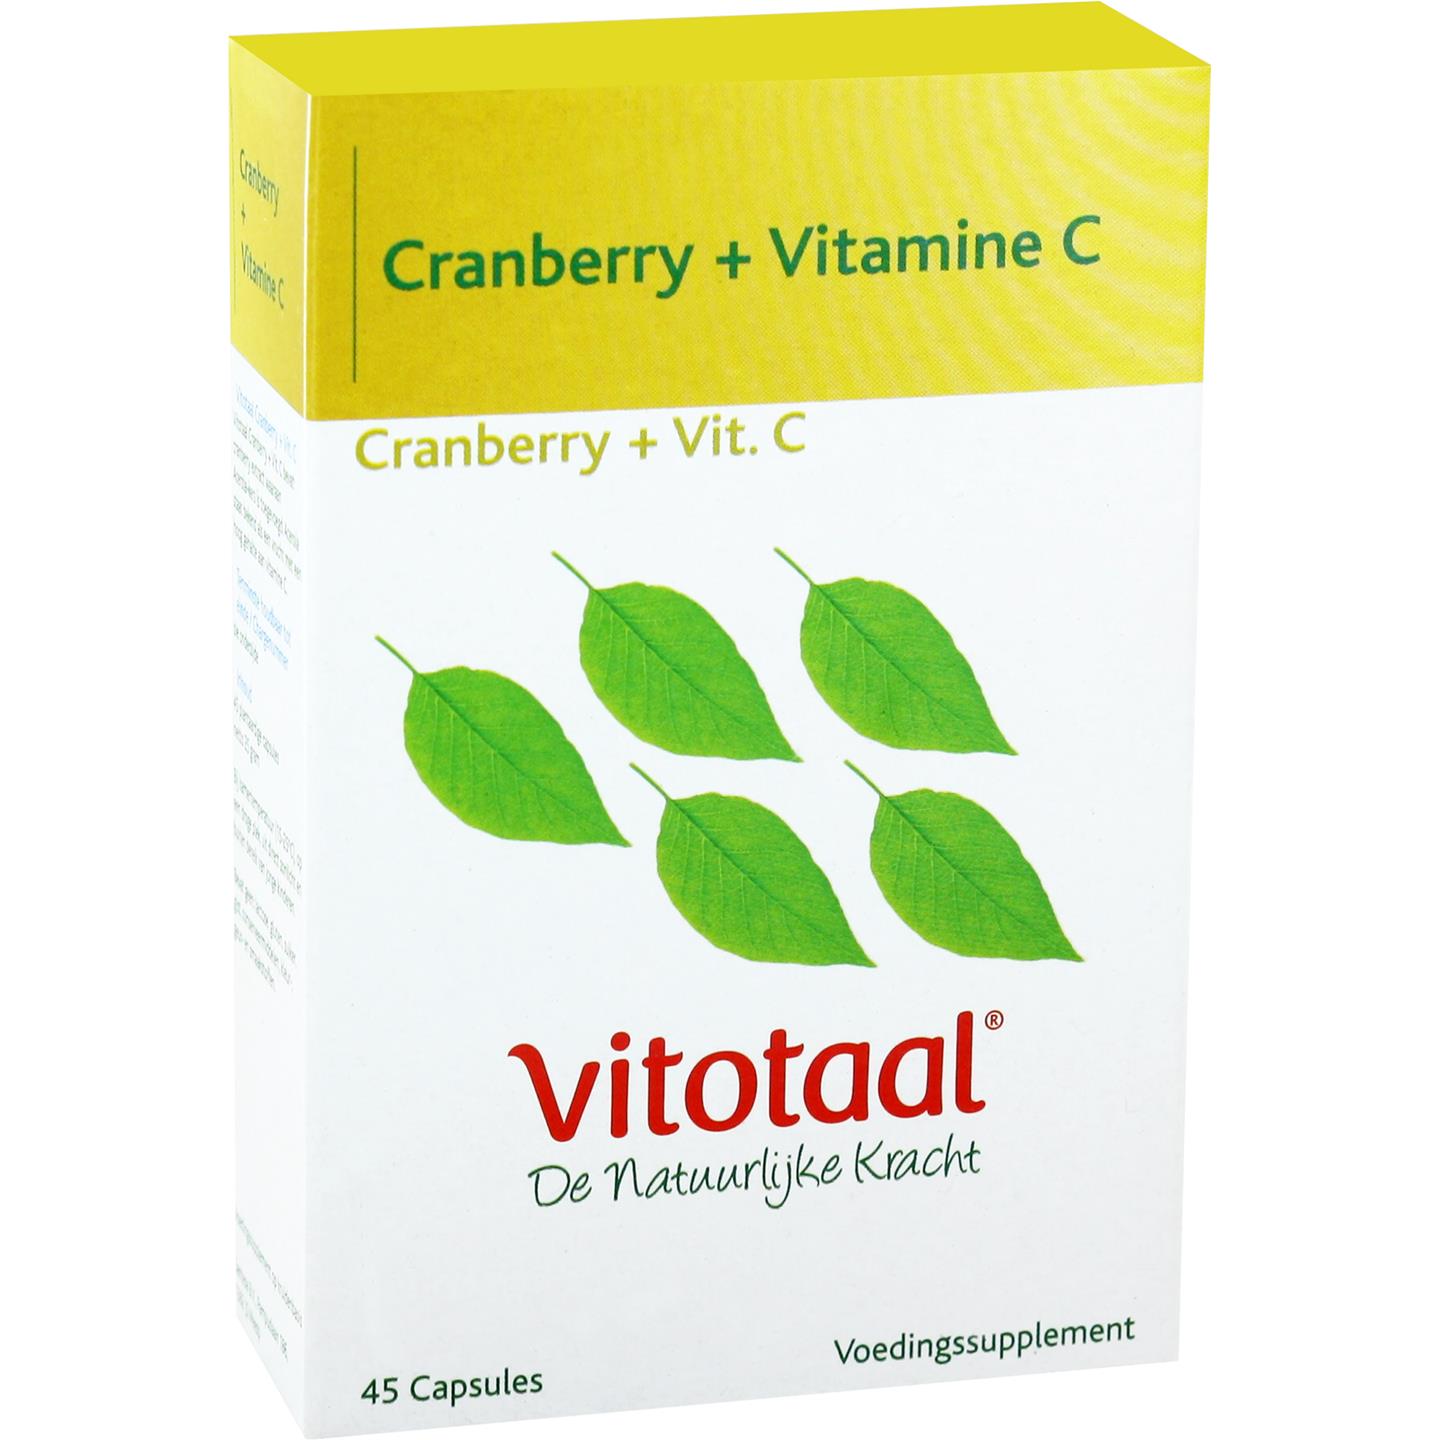 Cranberry + Vitamine C